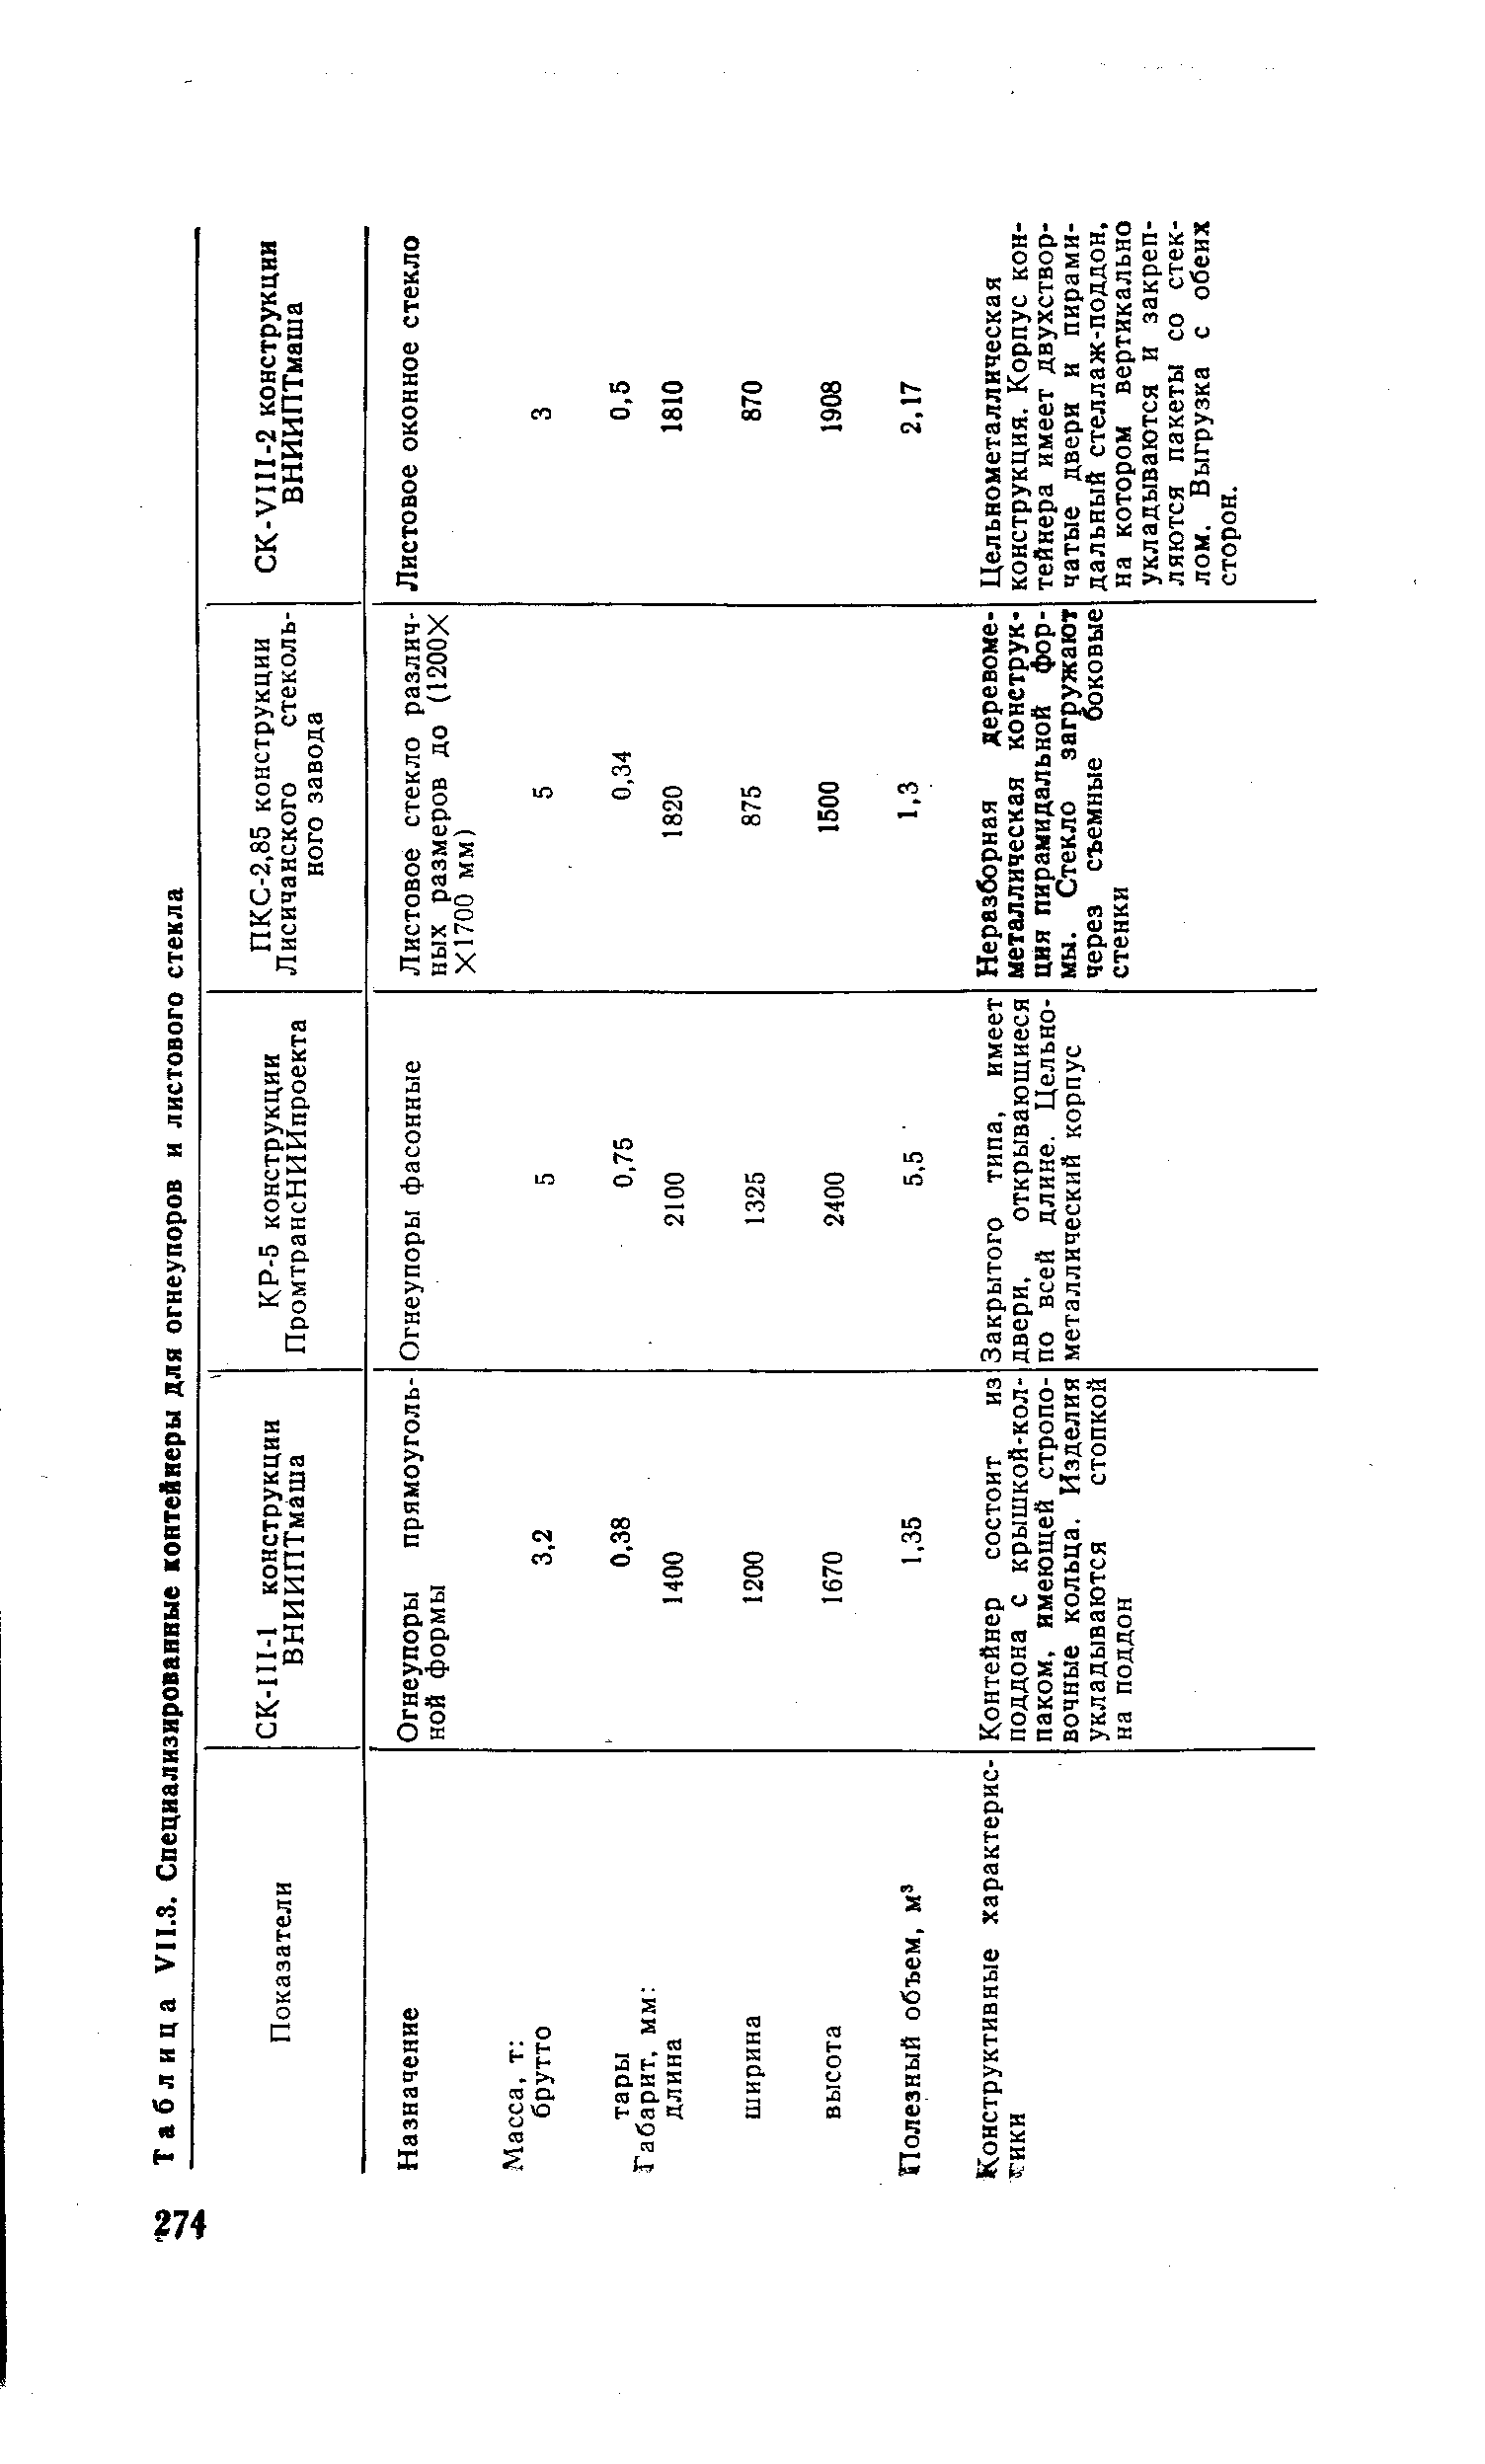 Таблица УП.З. Специализированные контейнеры для огнеупоров и листового стекла
